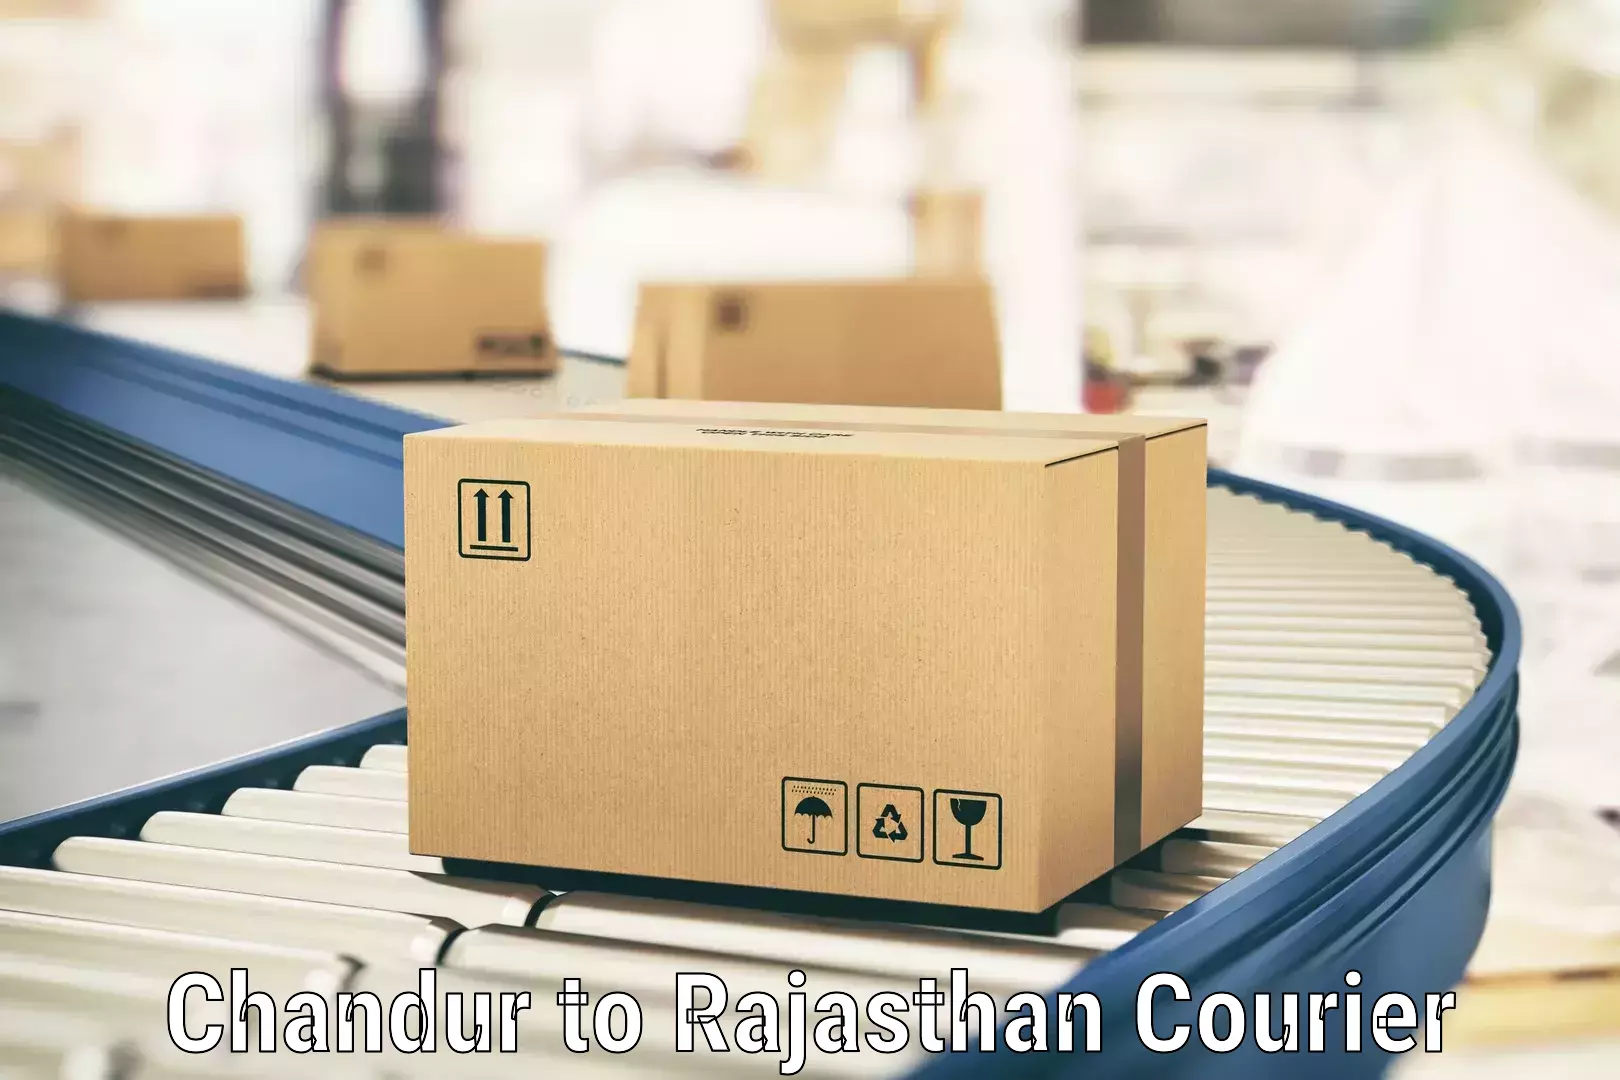 24-hour courier service Chandur to Fatehnagar